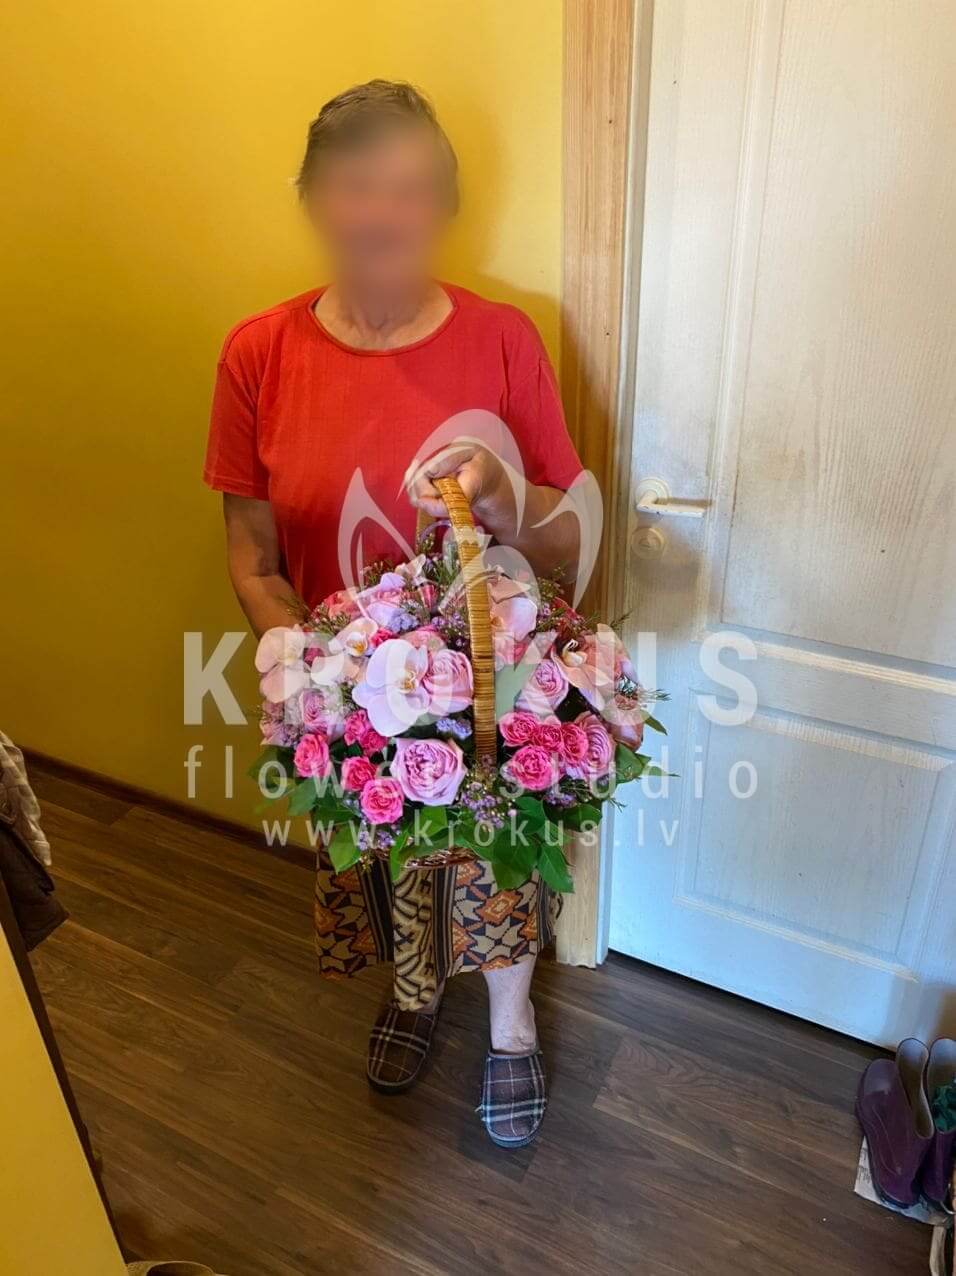 Доставка цветов в город Latvia (кустовые розырозовые розыорхидеистатицаваксфлауэрсалал)